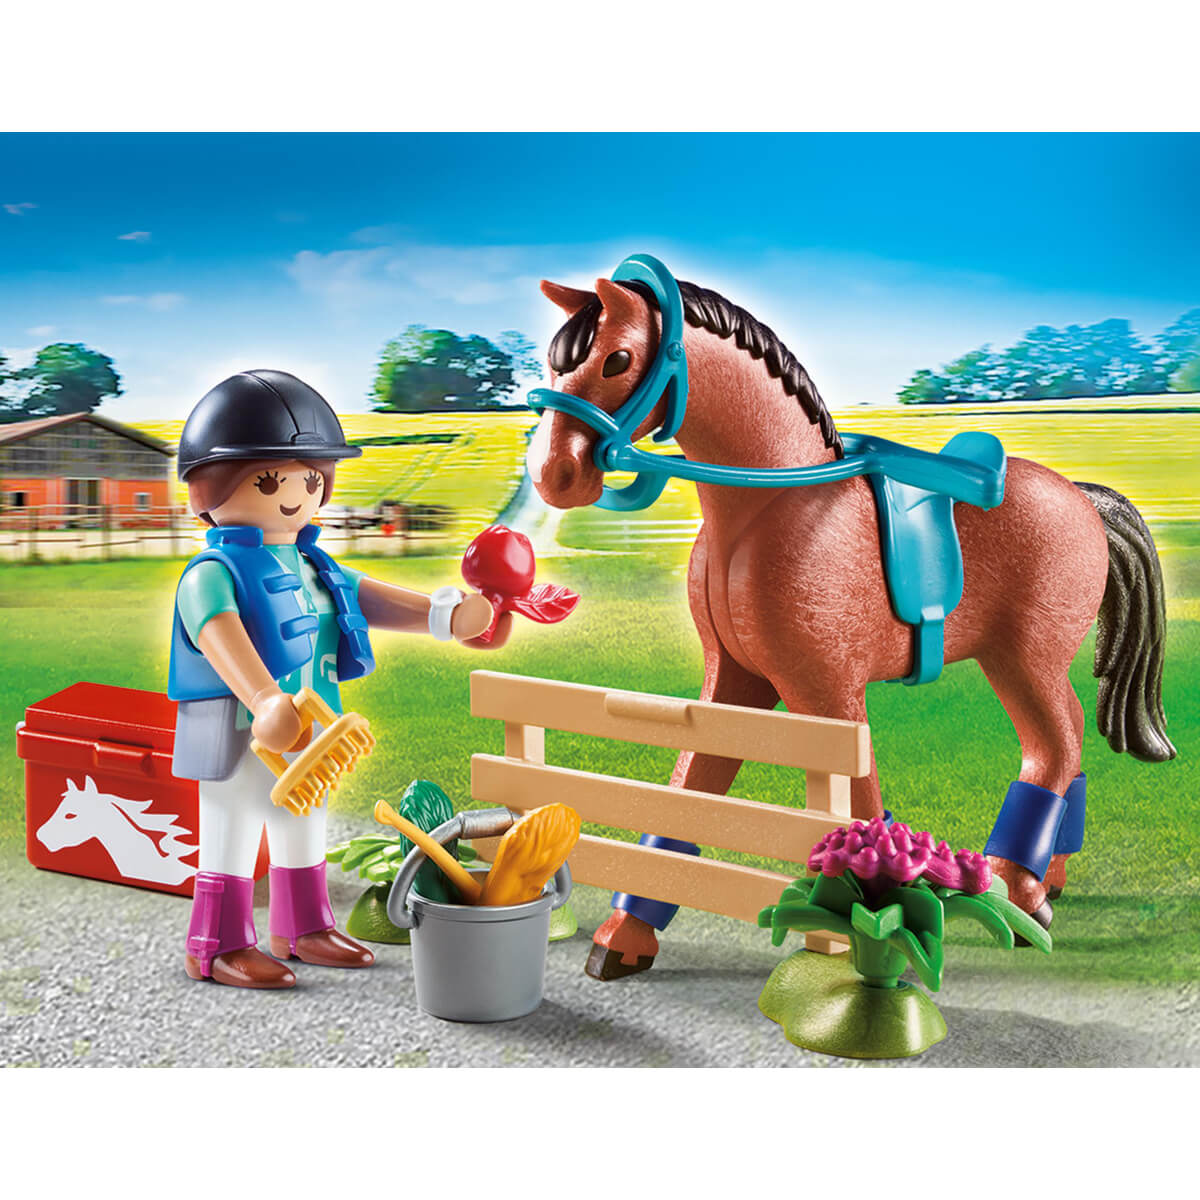 ΠΑΙΔΙ | Παιχνίδια | PLAYMOBIL | GIFT SETS (UNISEX 4+ ΕΤΩΝ) Gift Set "Φροντίζοντας το άλογο"